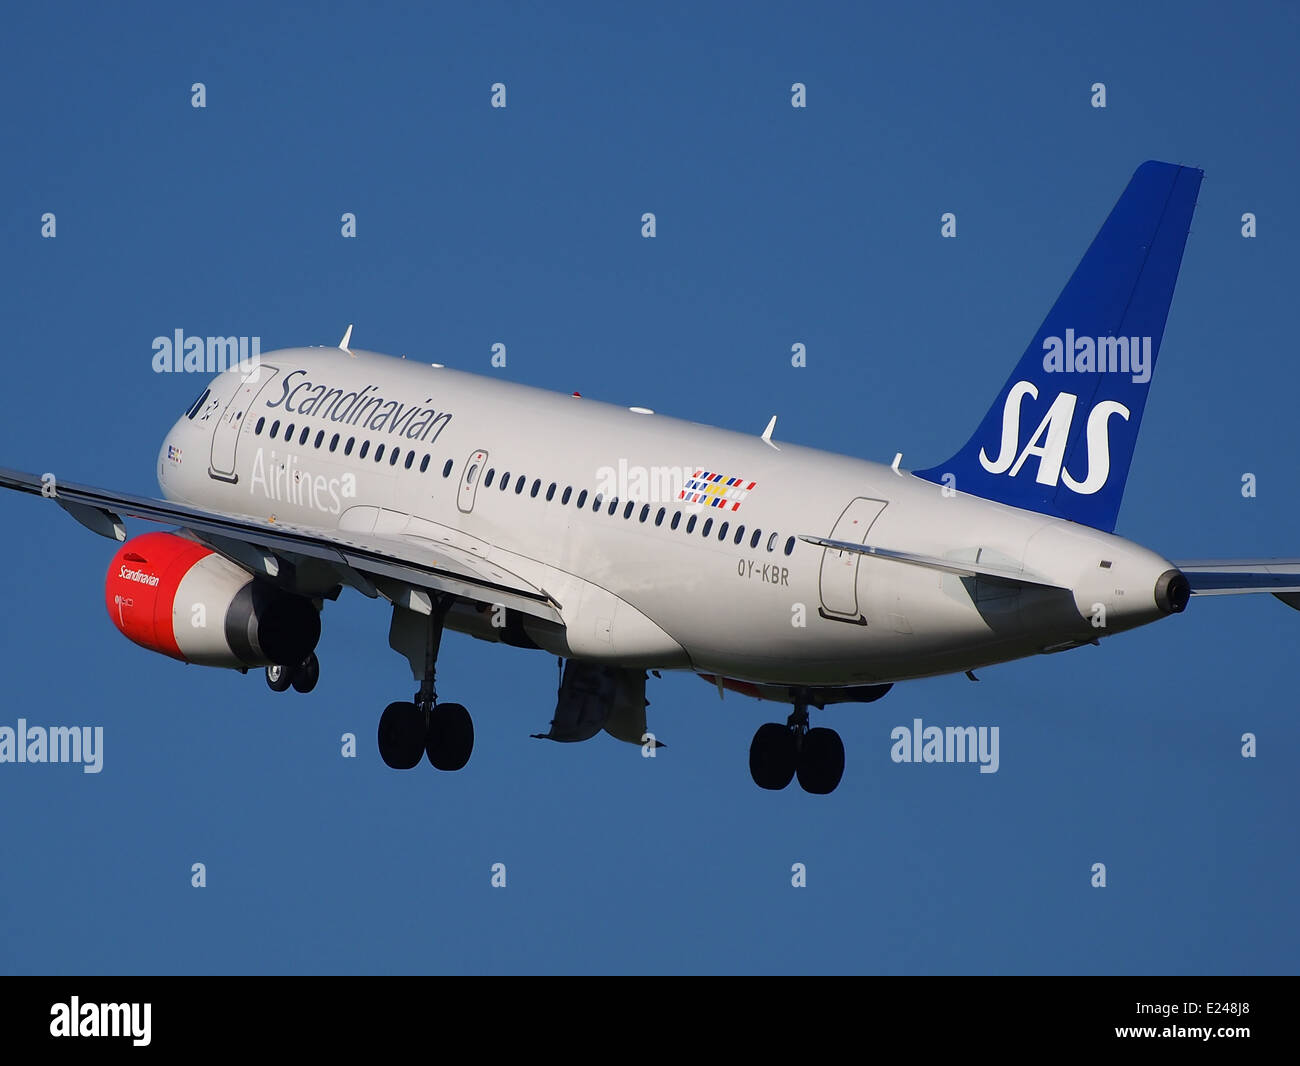 OY-KBR SAS Scandinavian Airlines Airbus A319-131 le décollage de l'aéroport de Schiphol (AMS - EHAM), aux Pays-Bas, 16mai2014, pic-4 Banque D'Images